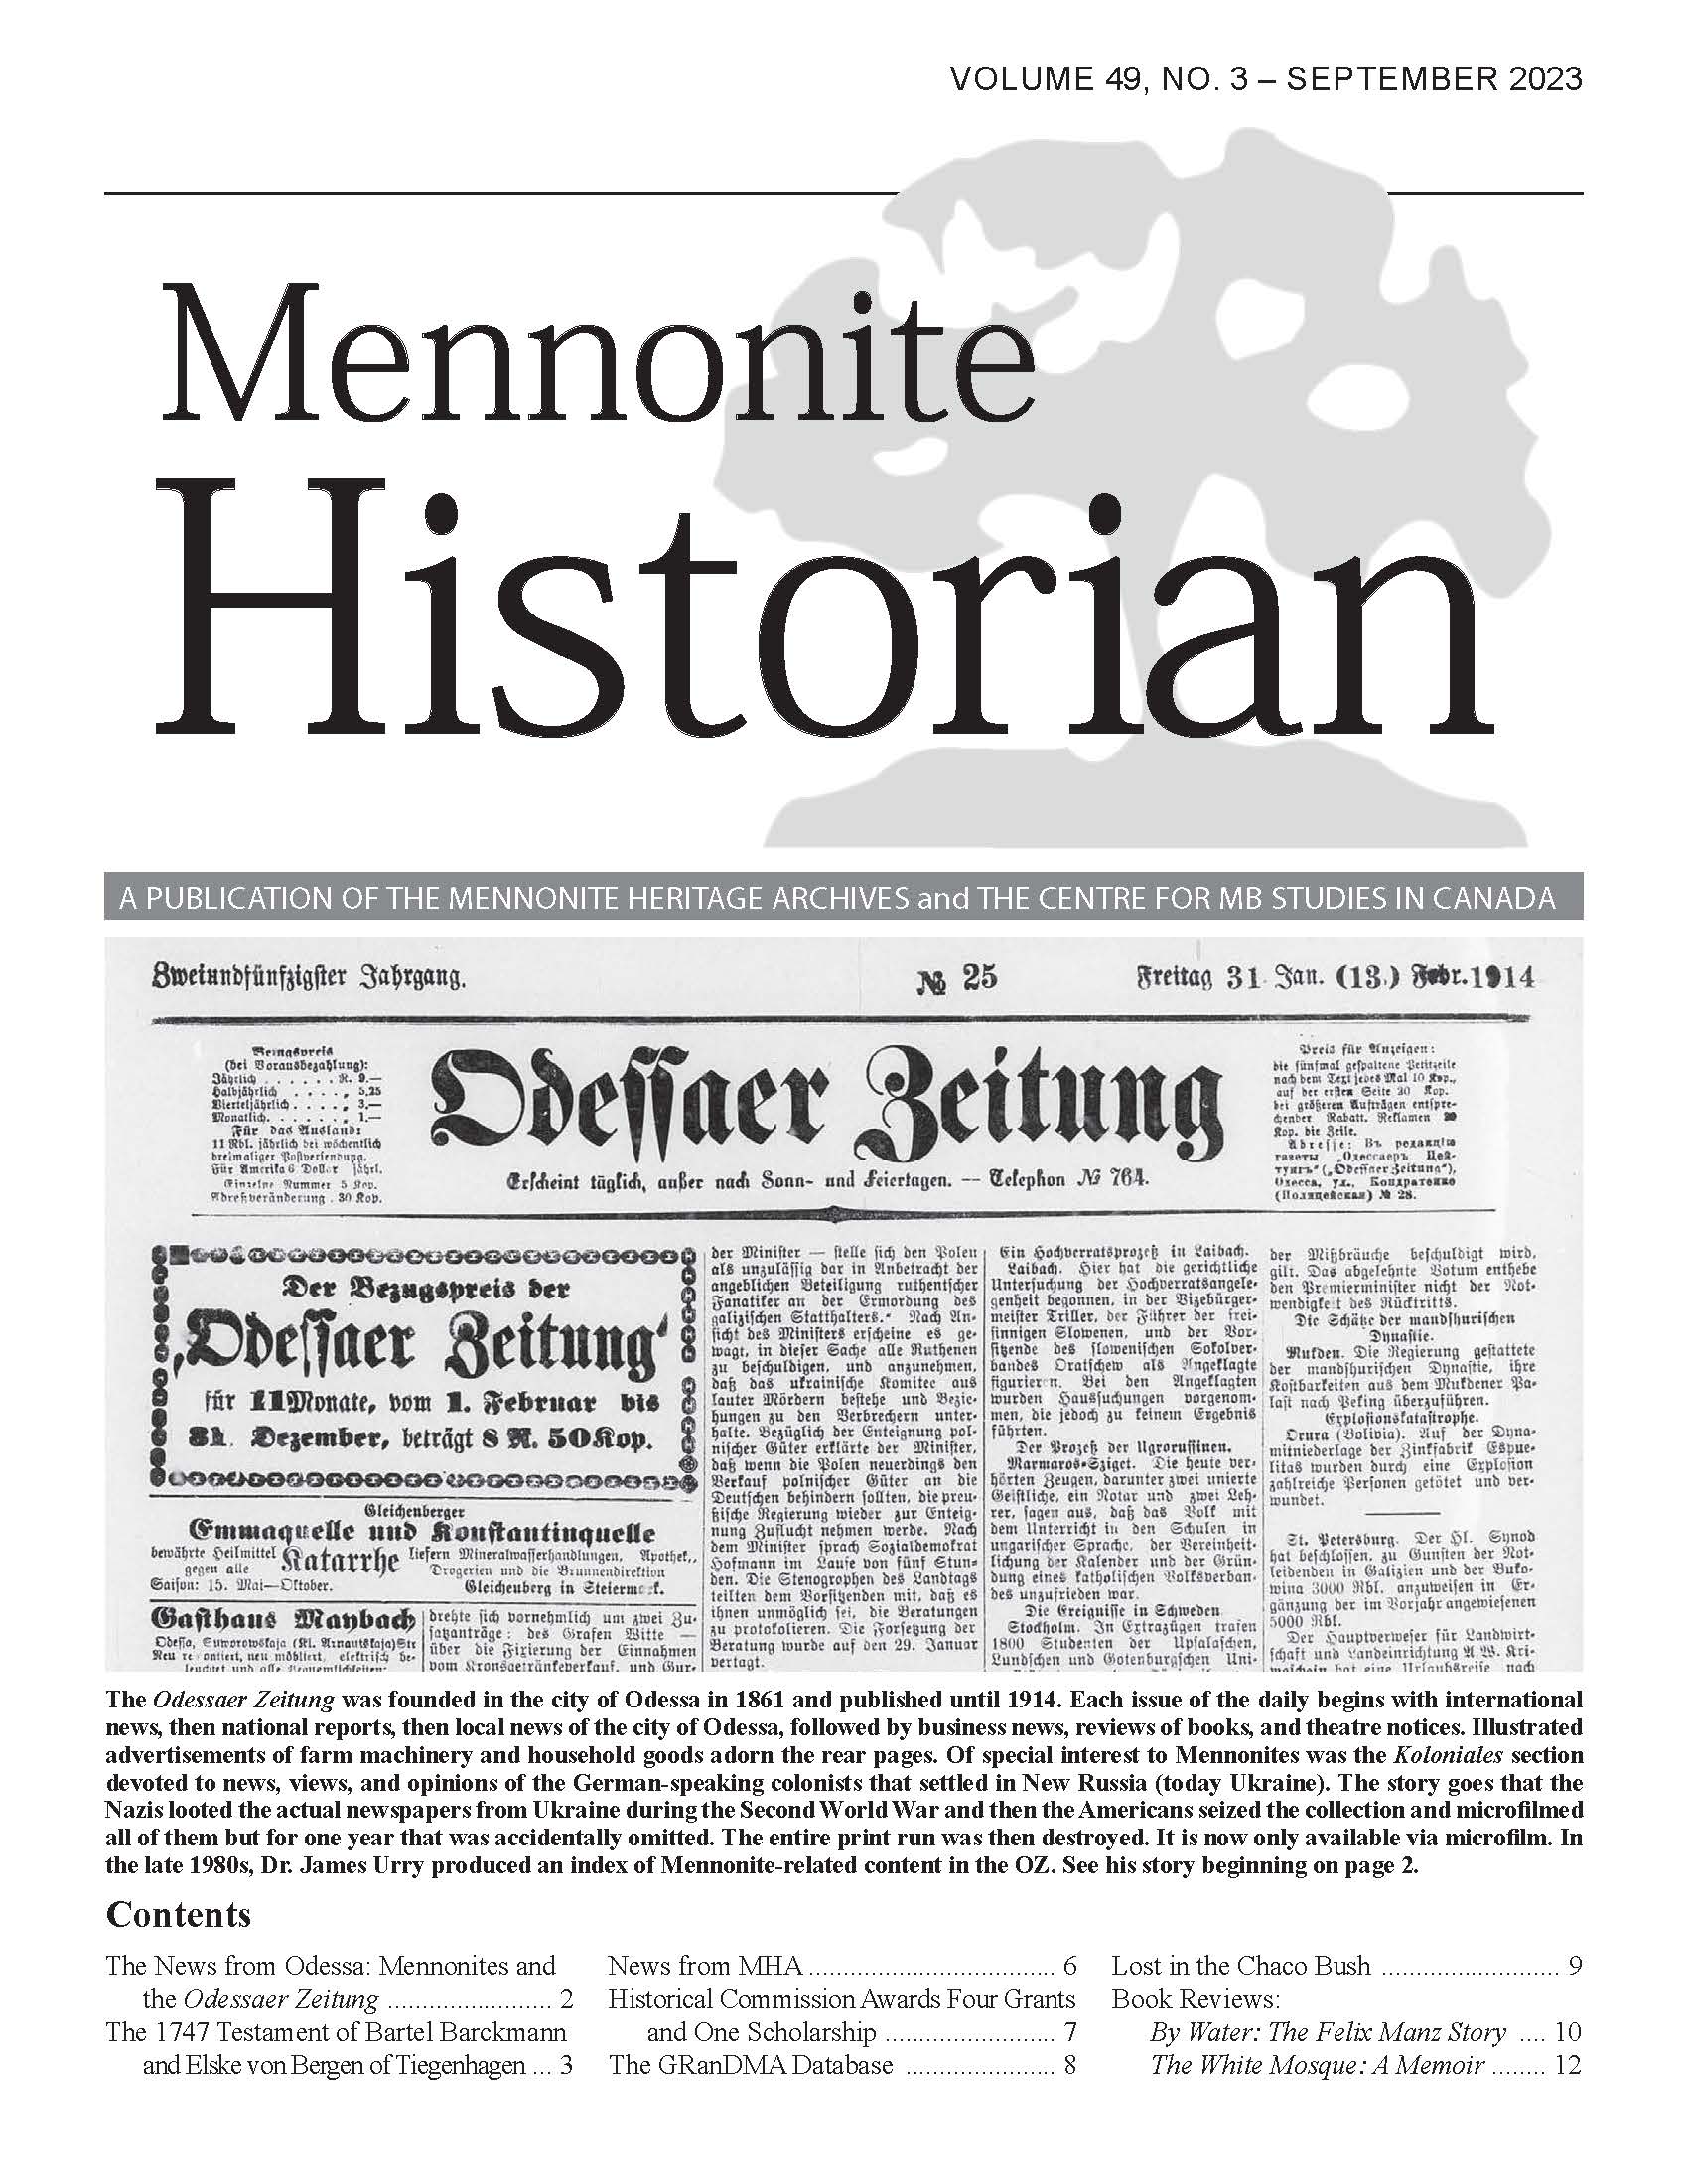 Mennonite Historian (September 2023)